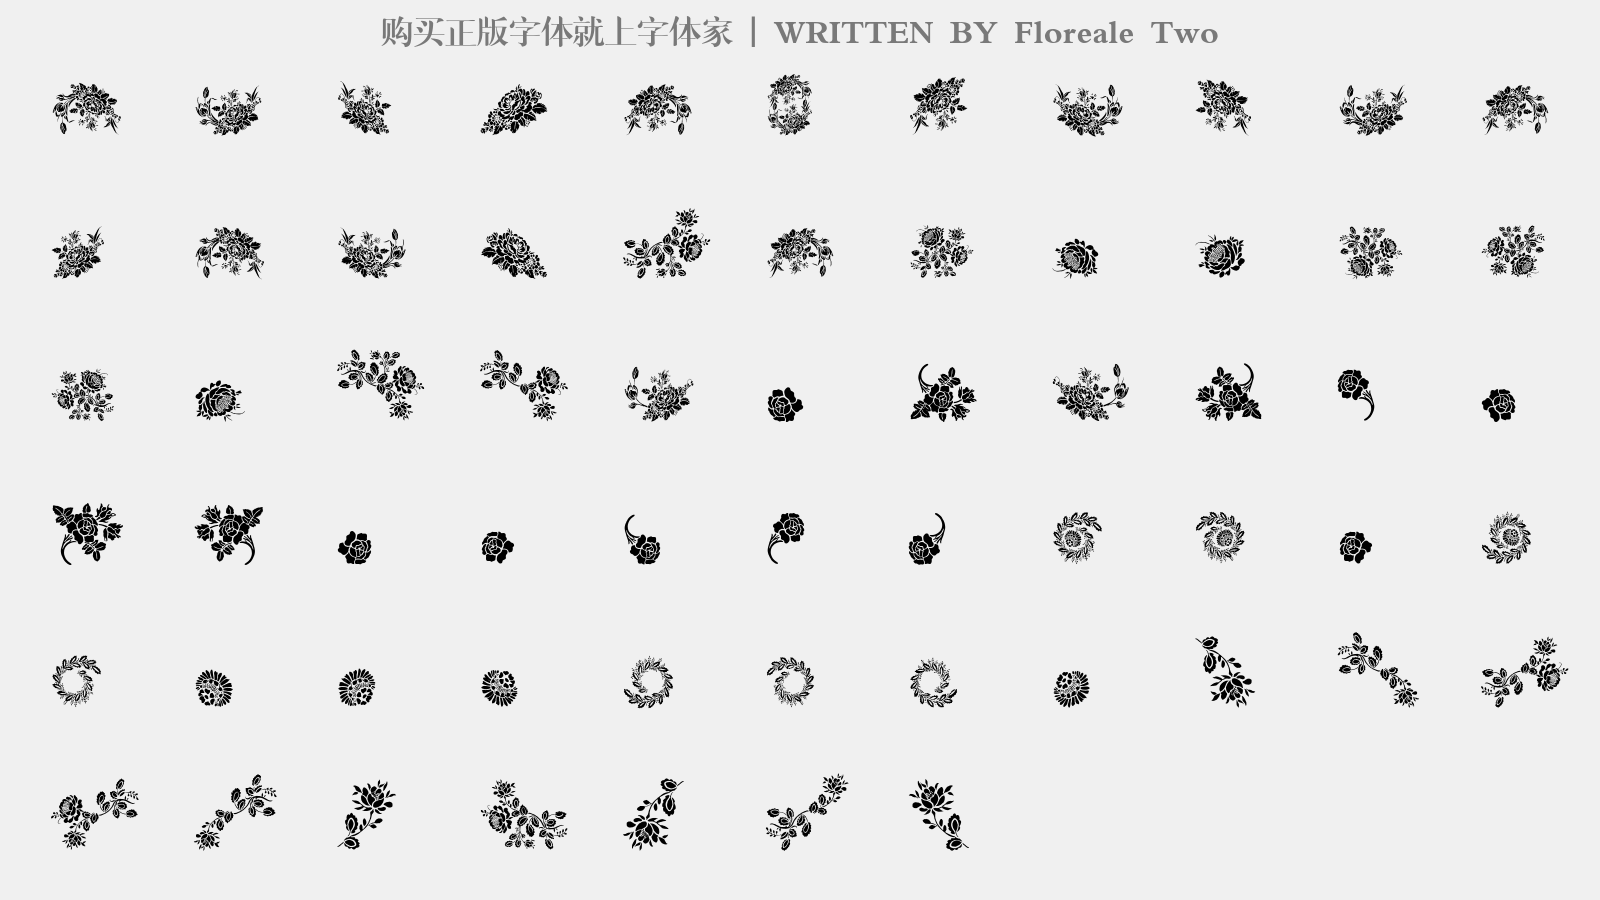 Floreale Two - 大写字母/小写字母/数字